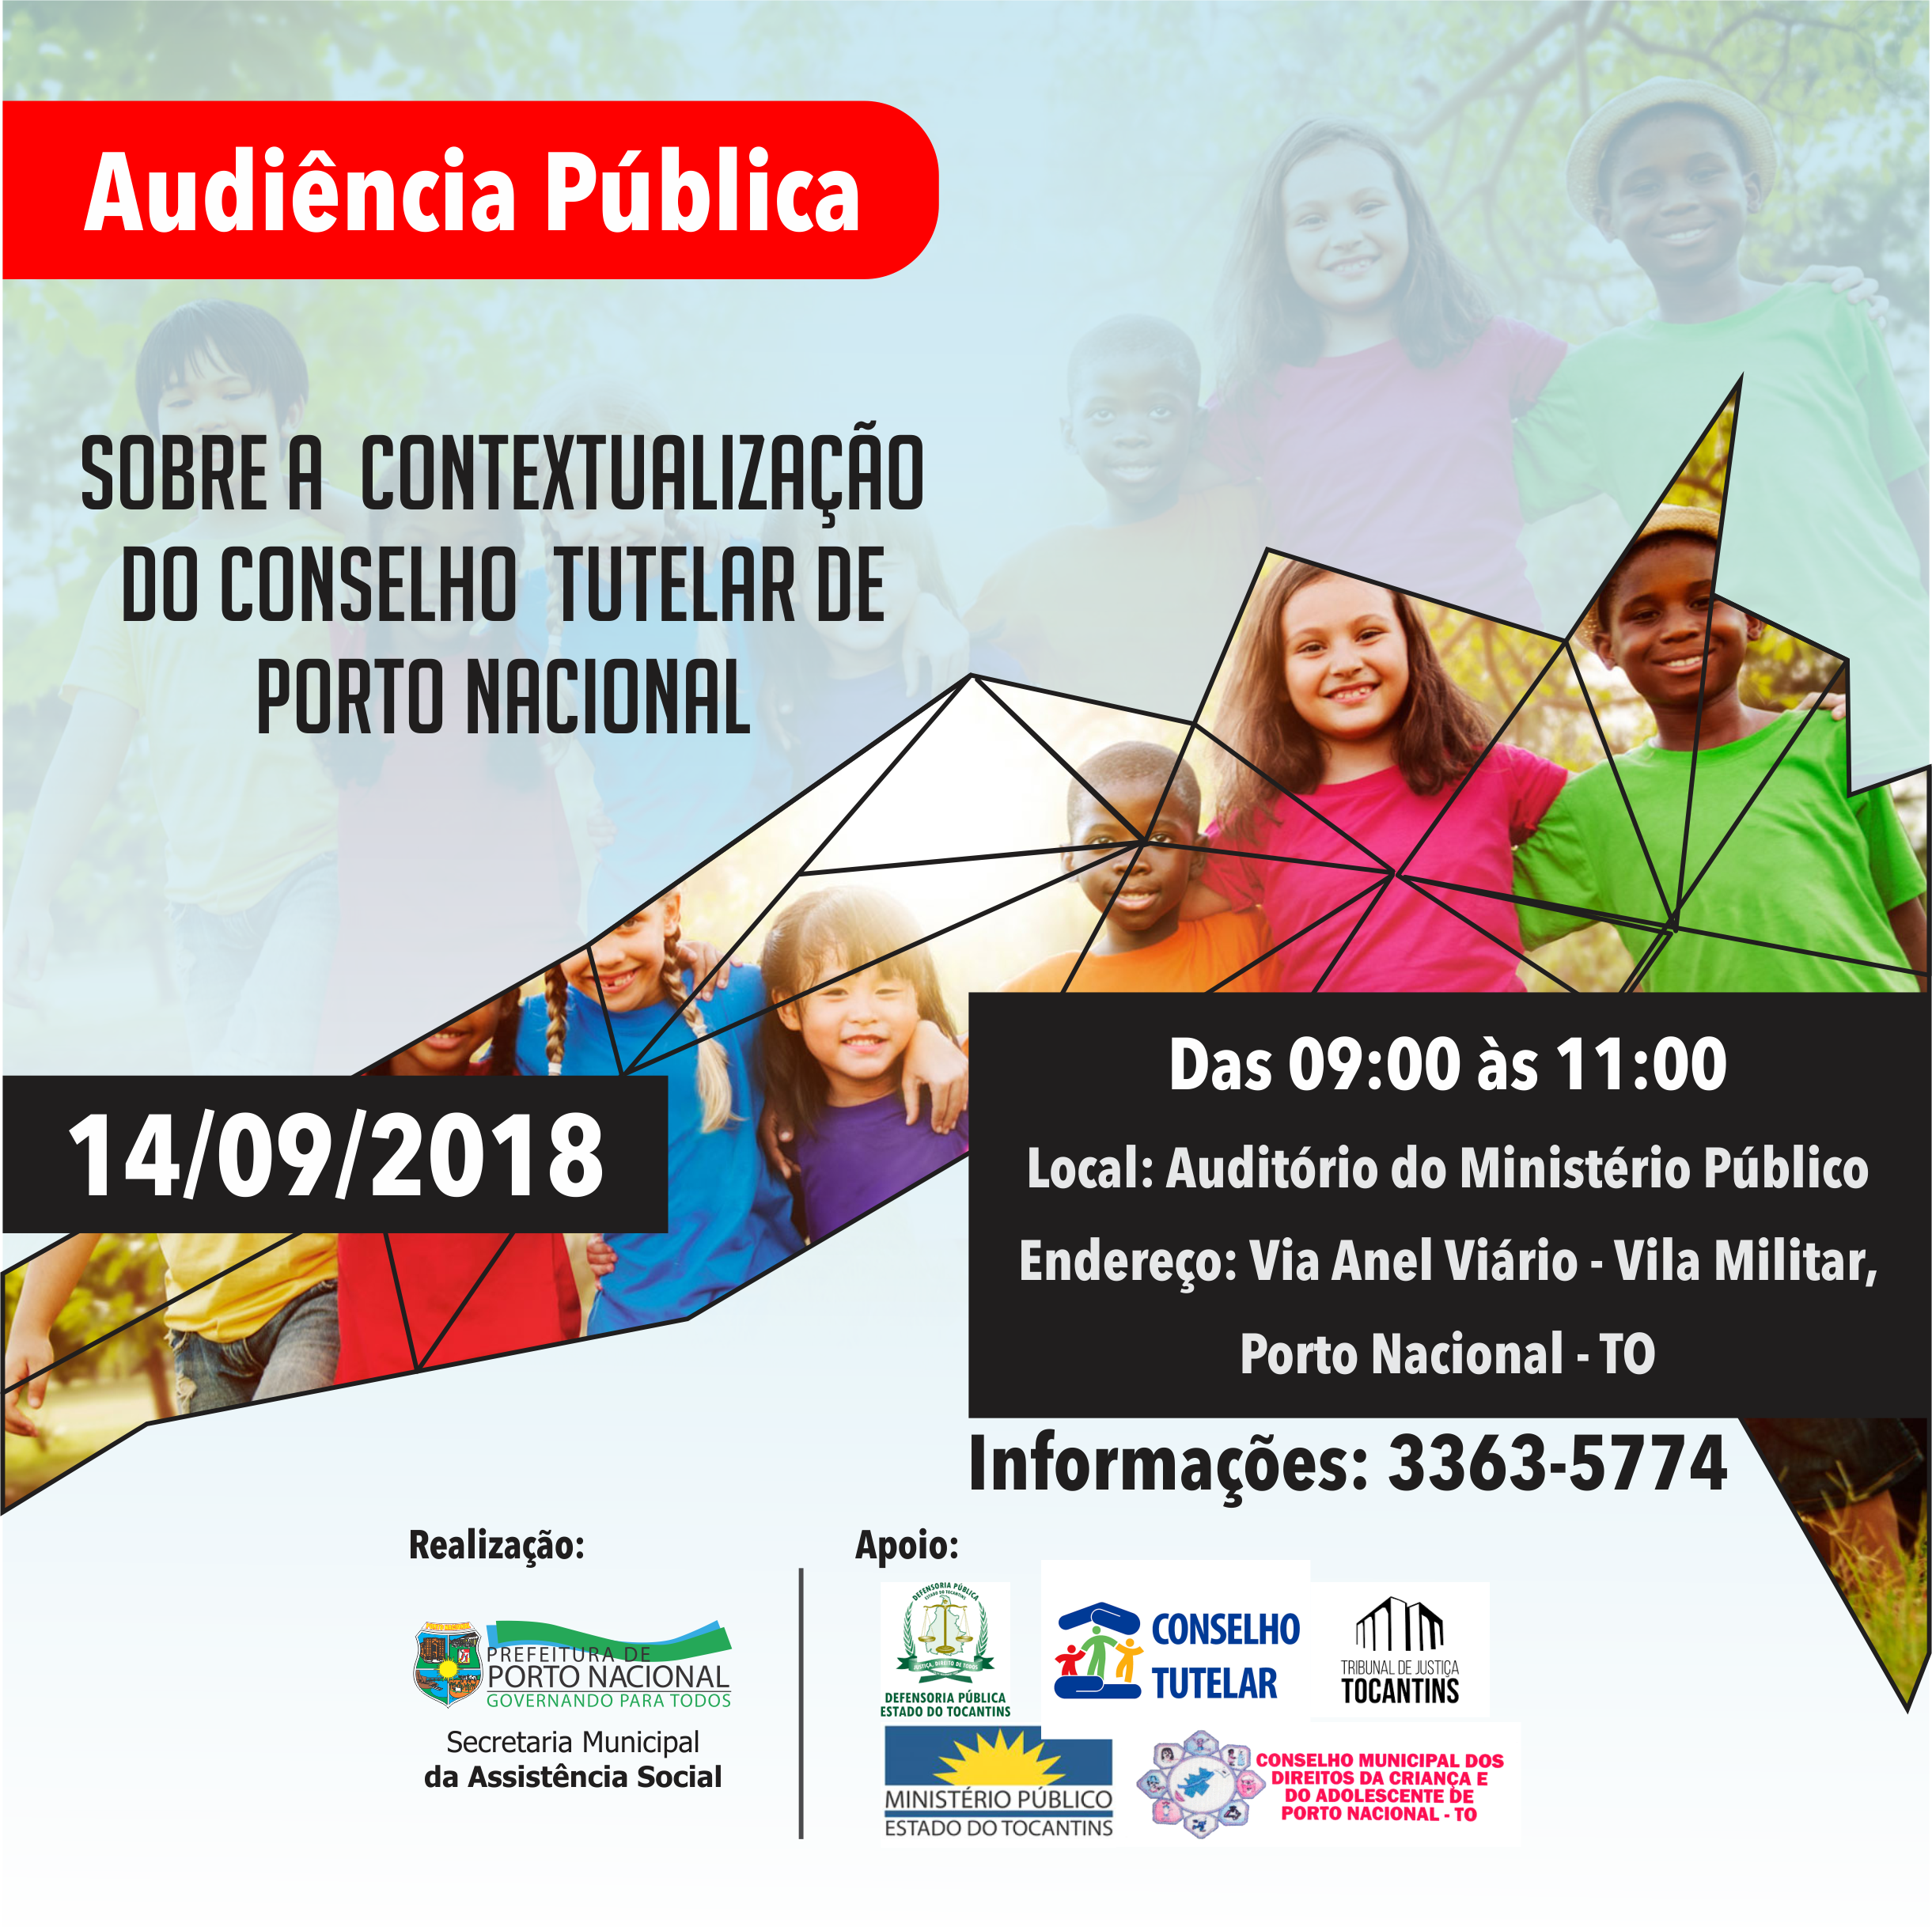 Audiência Pública sobre a contextualização do Conselho Tutelar de Porto Nacional acontecerá nesta sexta feira 14